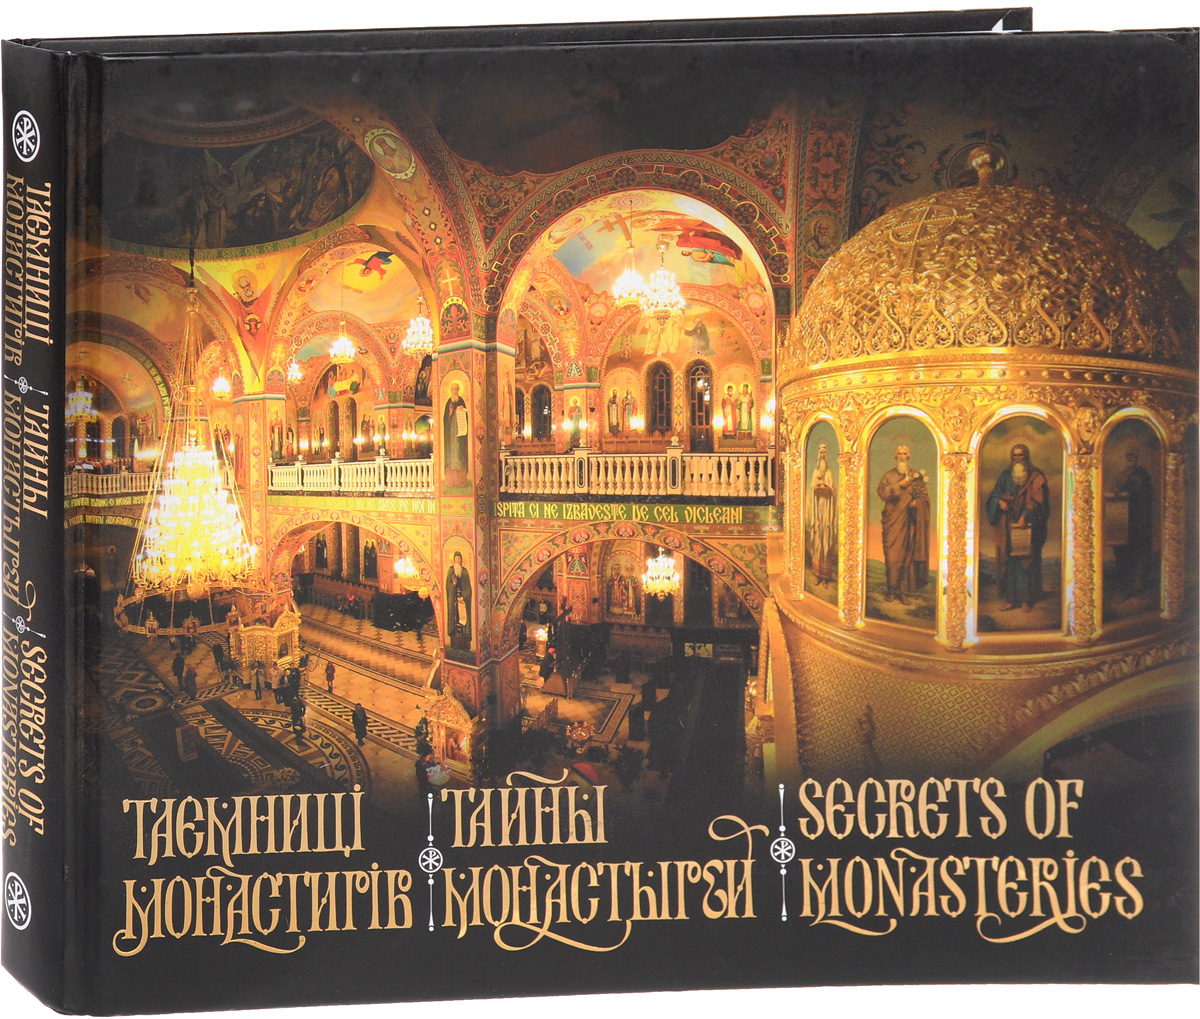 Тайны монастырей / Secrets of Monasteries. Анастасия Белоусова, Ольга Гук, Виктория Железнякова